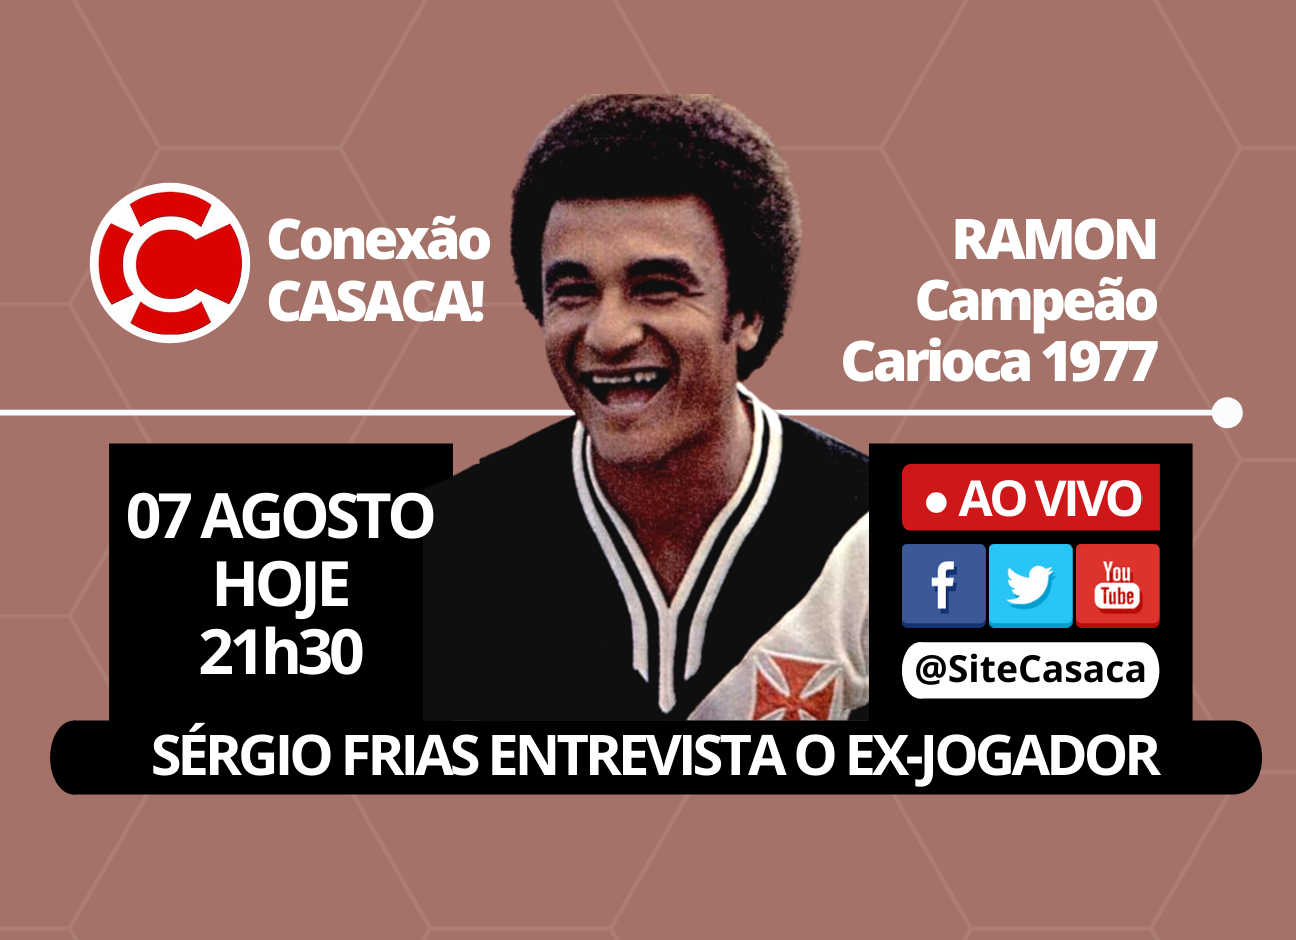 Conexão CASACA! – RAMON, ex-jogador do Vasco Campeão Carioca 1977